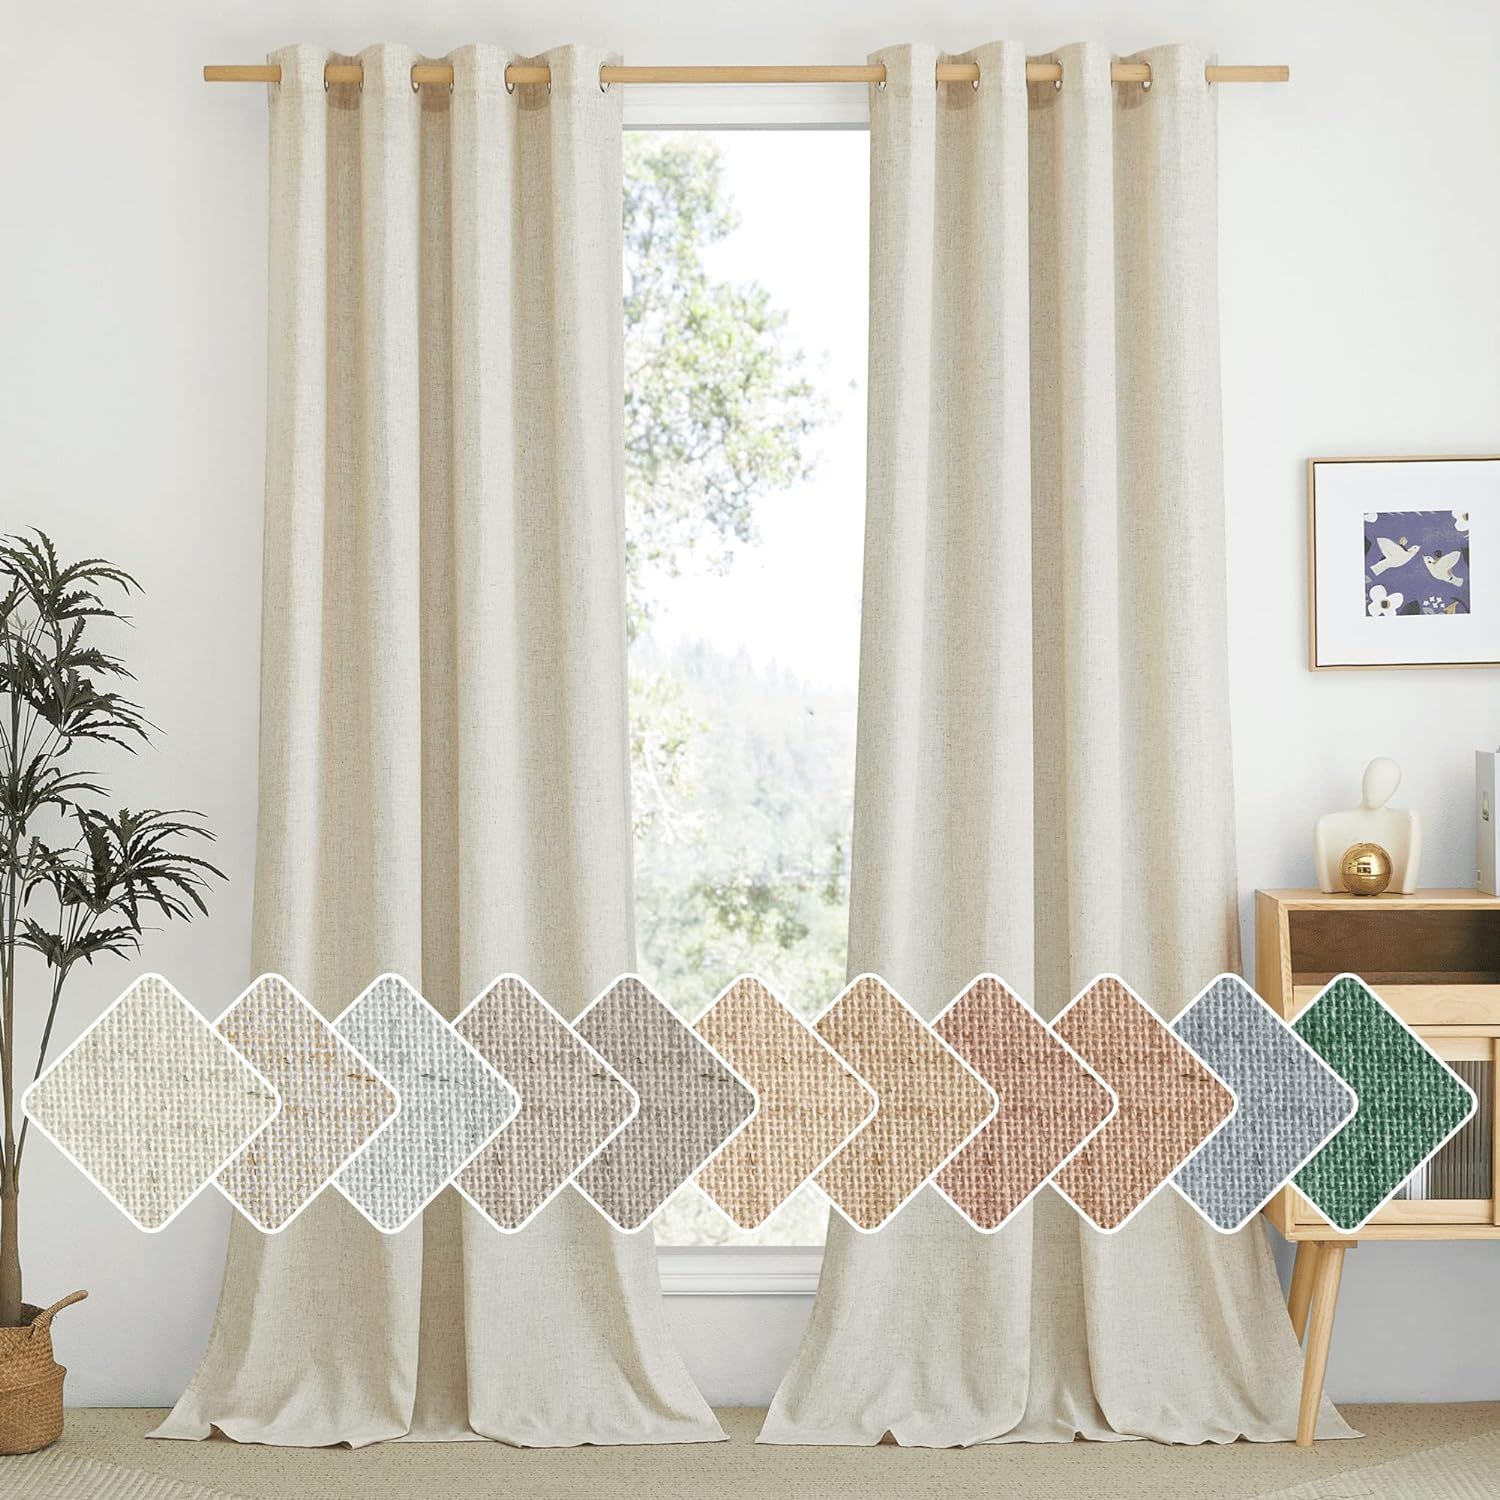 NICETOWN Natural Linen Curtains 84 inch Long 2 Panels Set, Grommet Top Thick Linen Burlap Semi Sh... | Amazon (US)